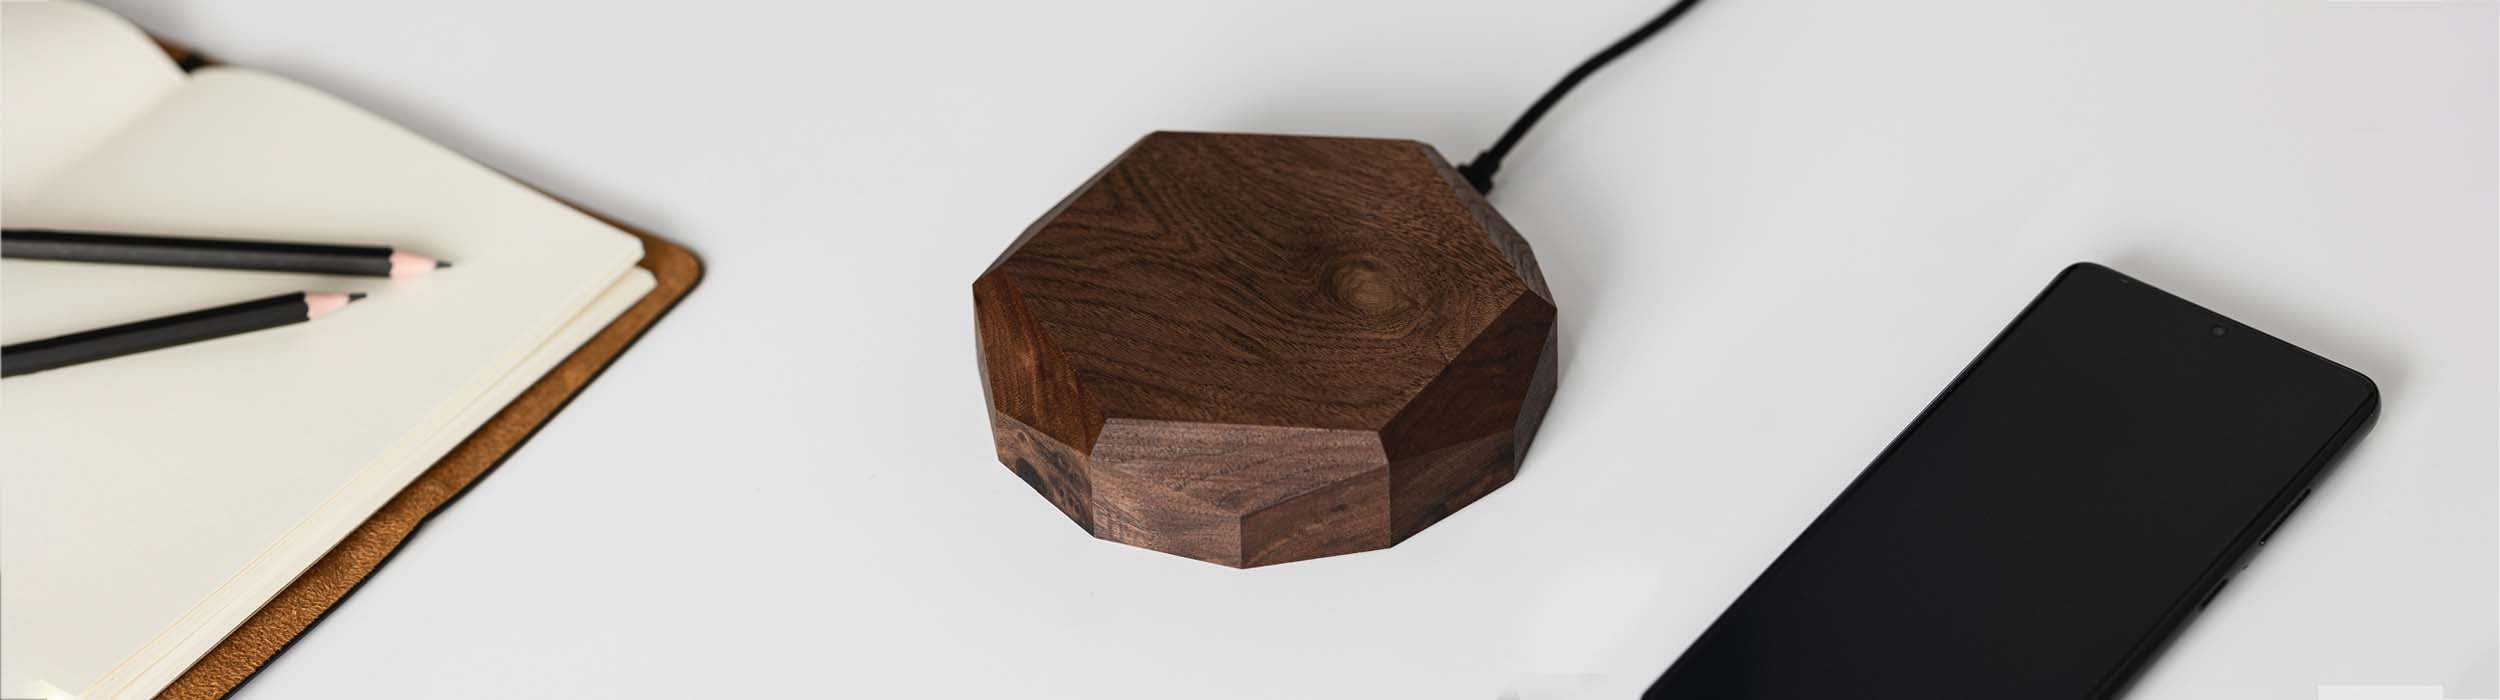 Drewniane ładowarki bezprzewodowe — geometryczne